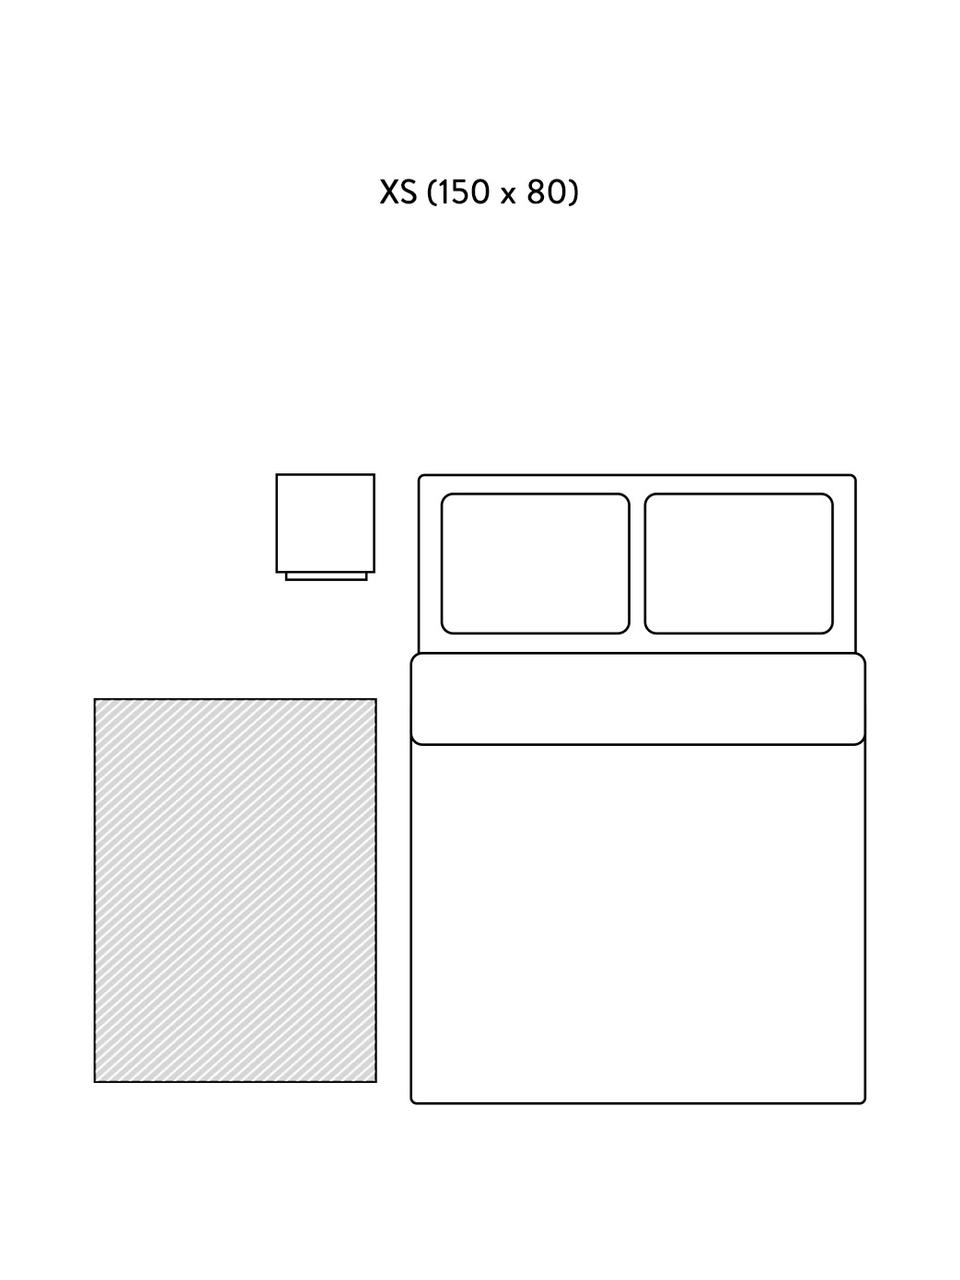 Handgetufteter Baumwollteppich Asisa mit Zickzack-Muster und Fransen, Beige,Weiß, B 200 x L 300 cm (Größe L)